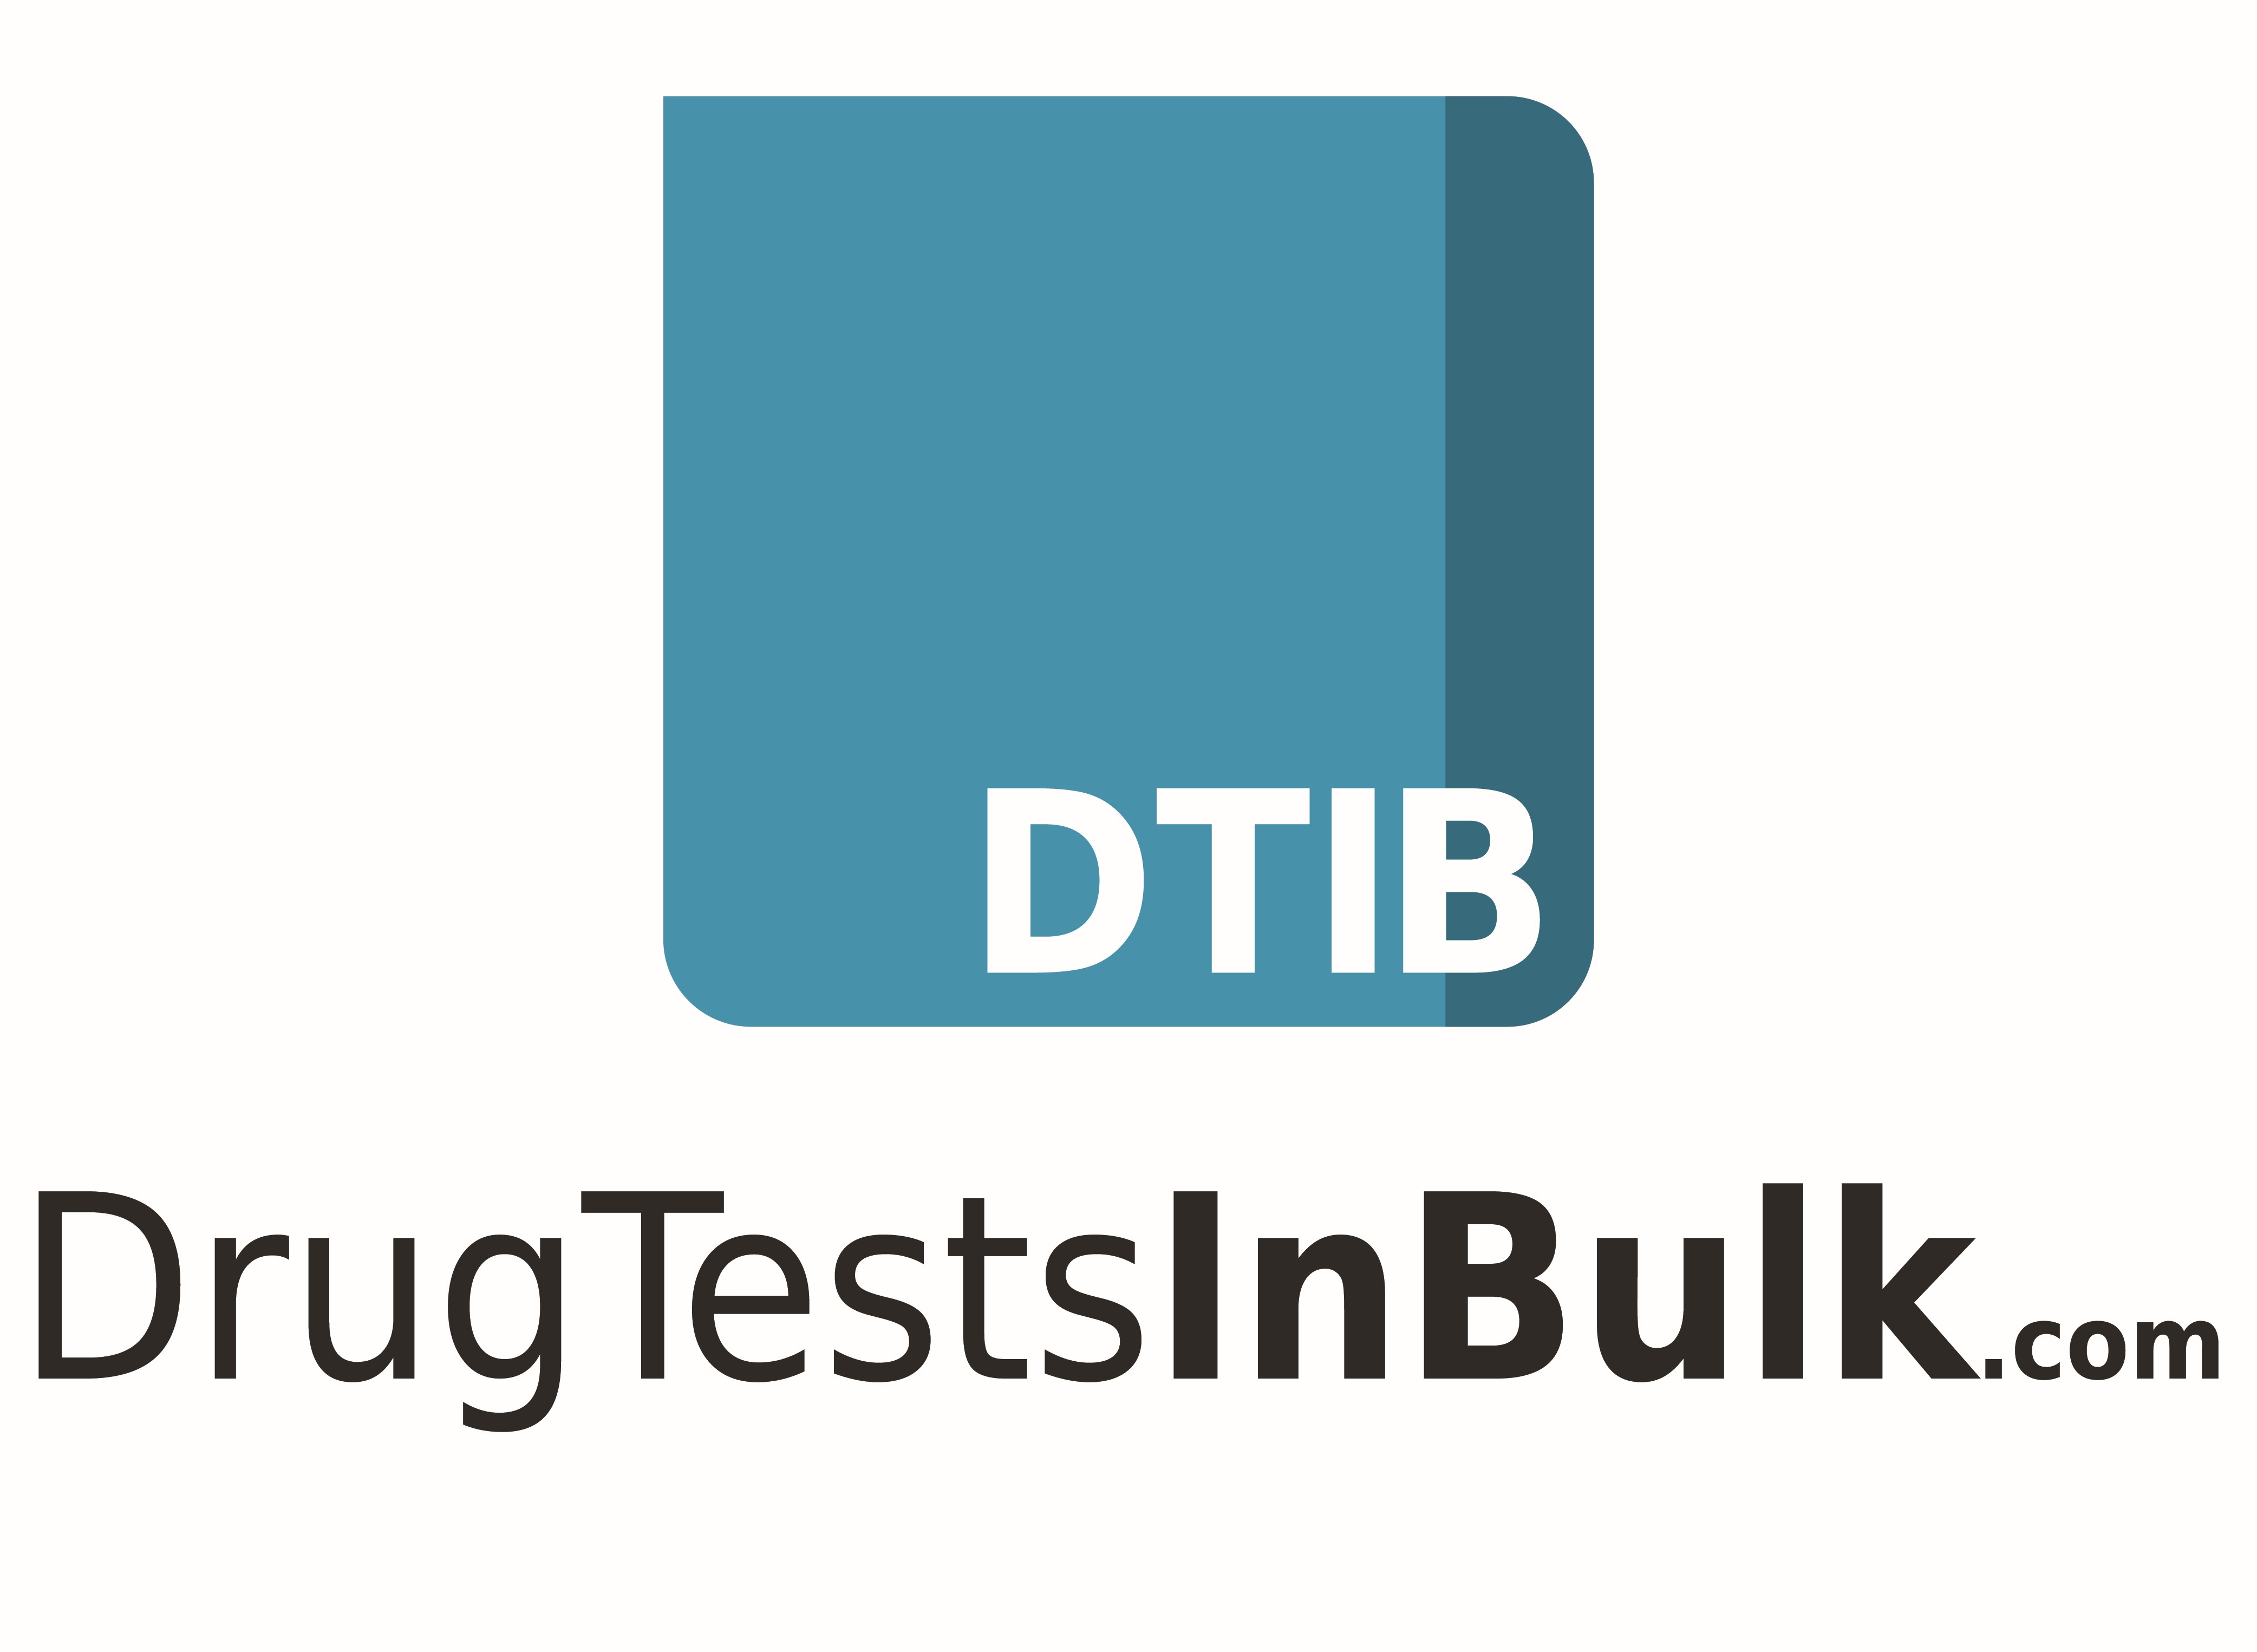 Drug tests in bulk company